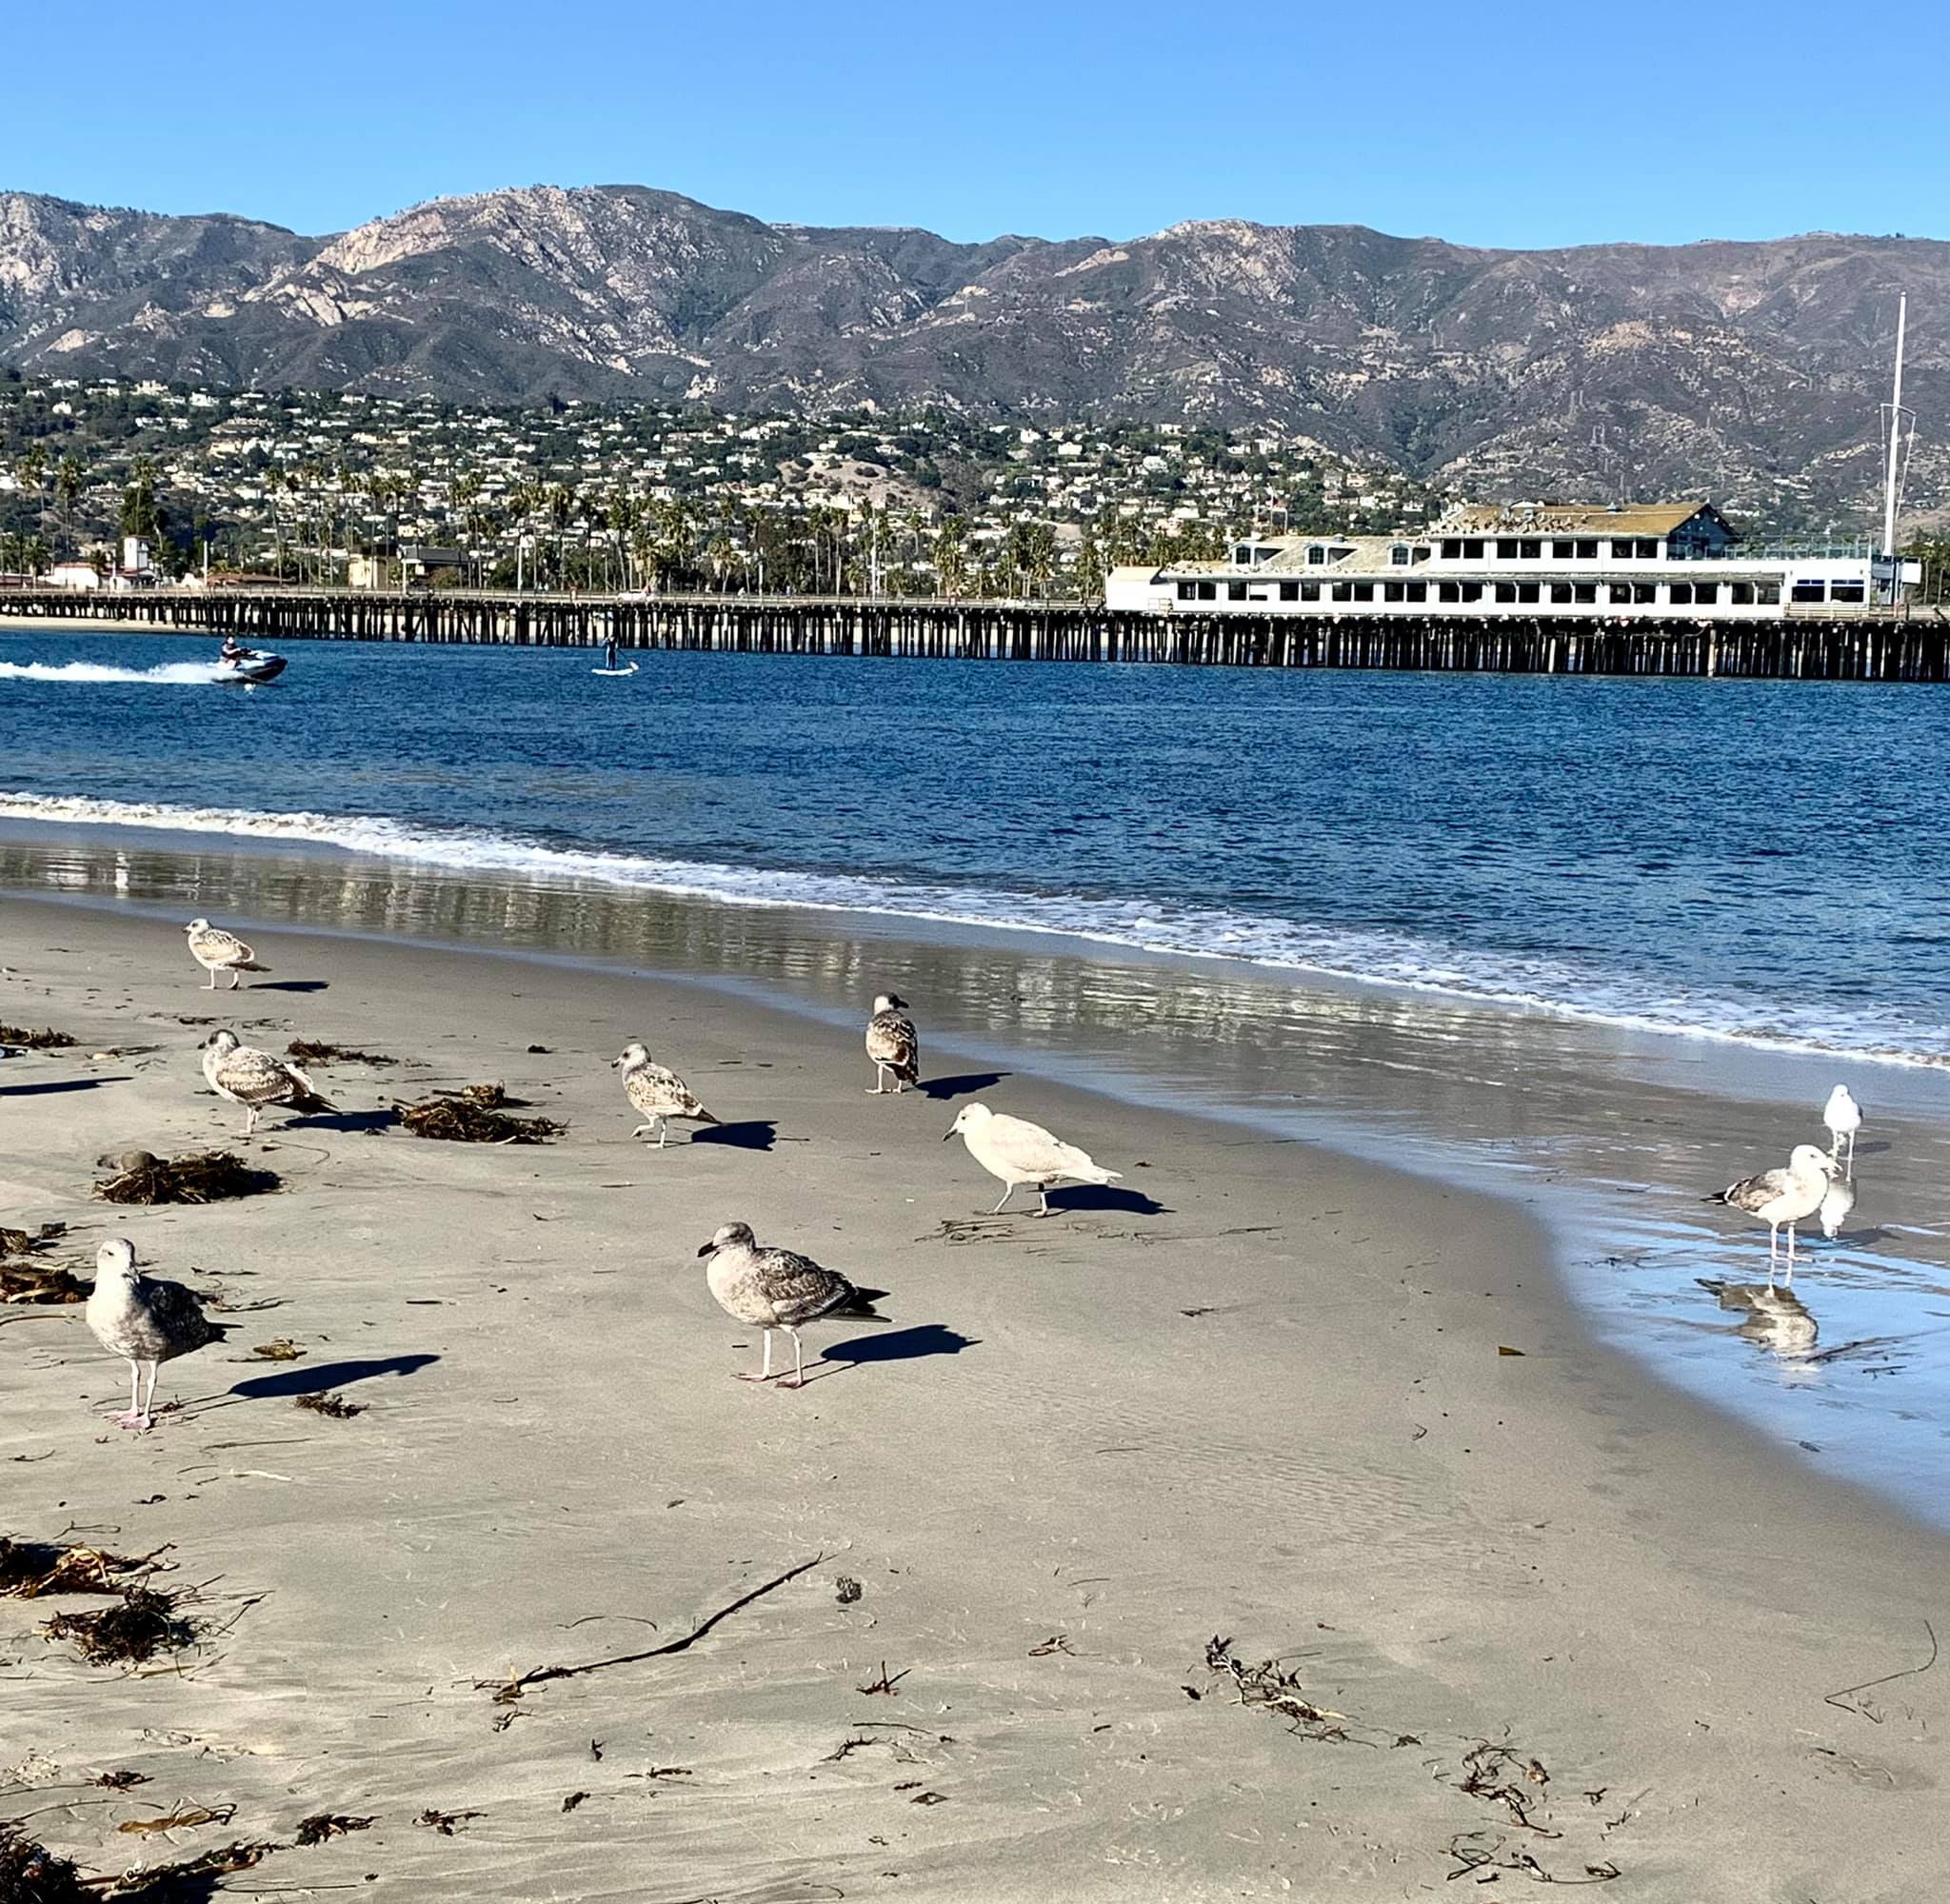 Birds on a fairly isolated beach near Santa Barbara Harbor's entrance channel